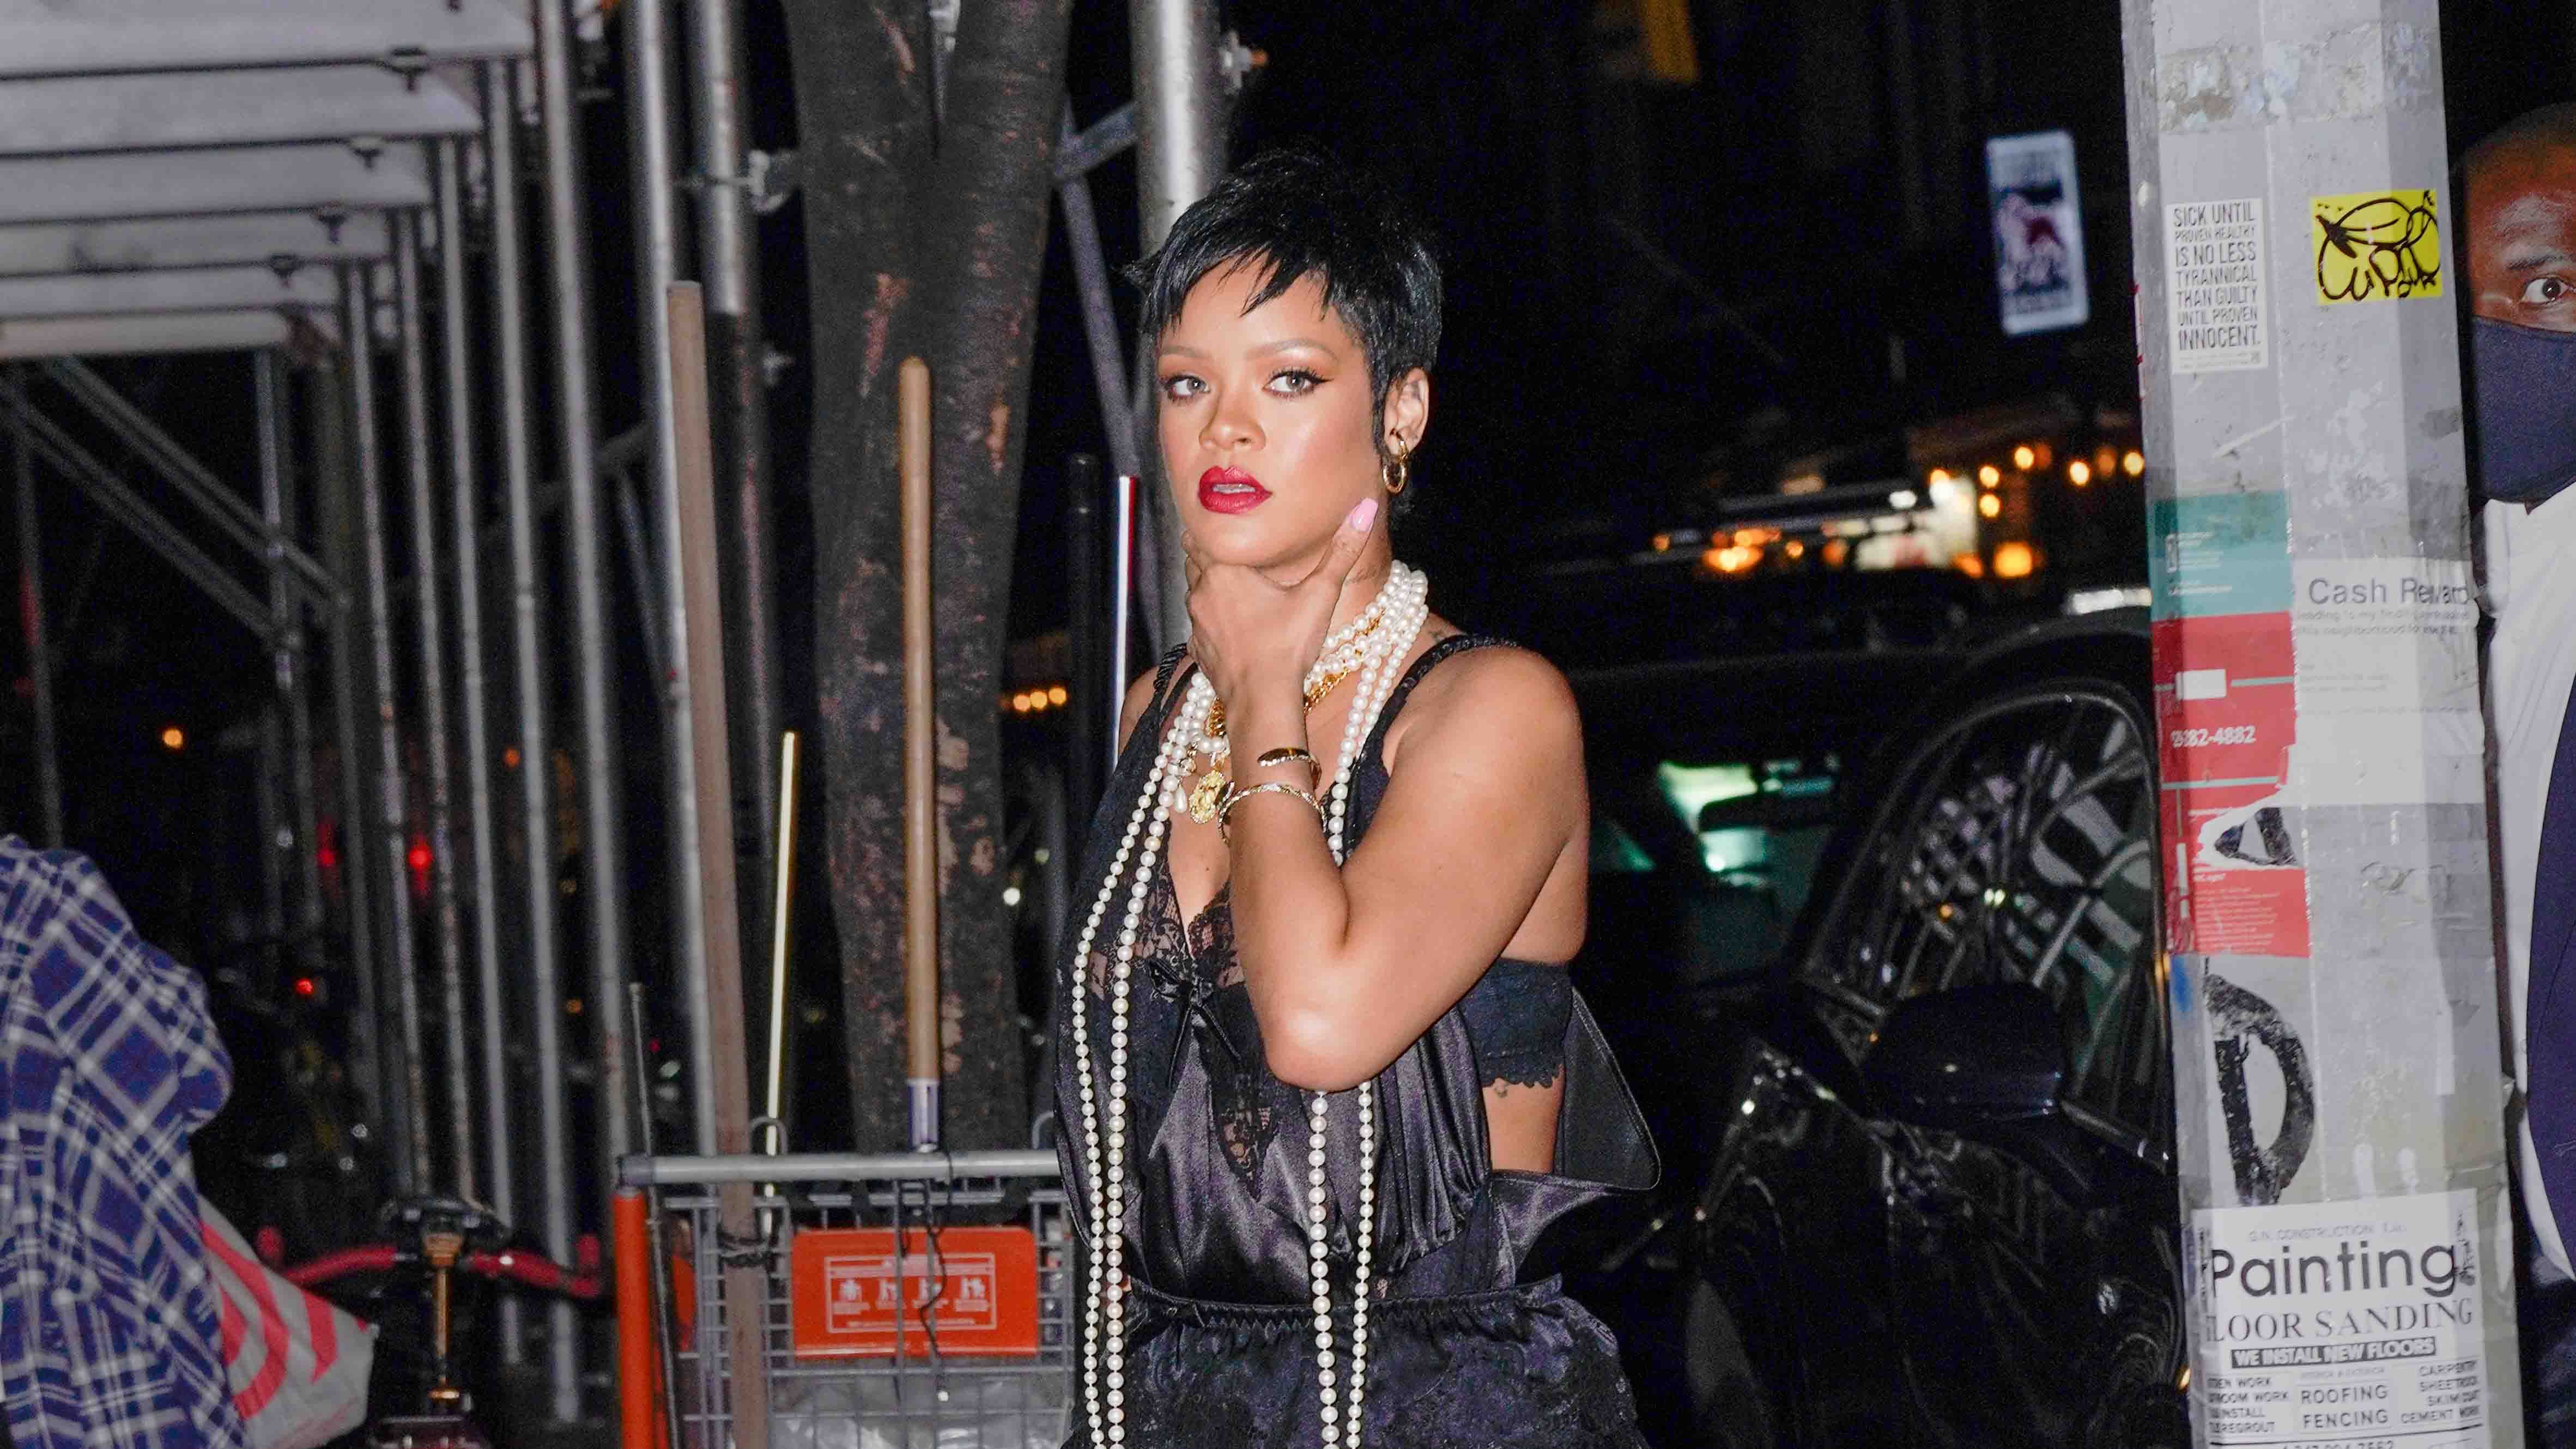 Rihanna New York City May 23, 2016 – Star Style